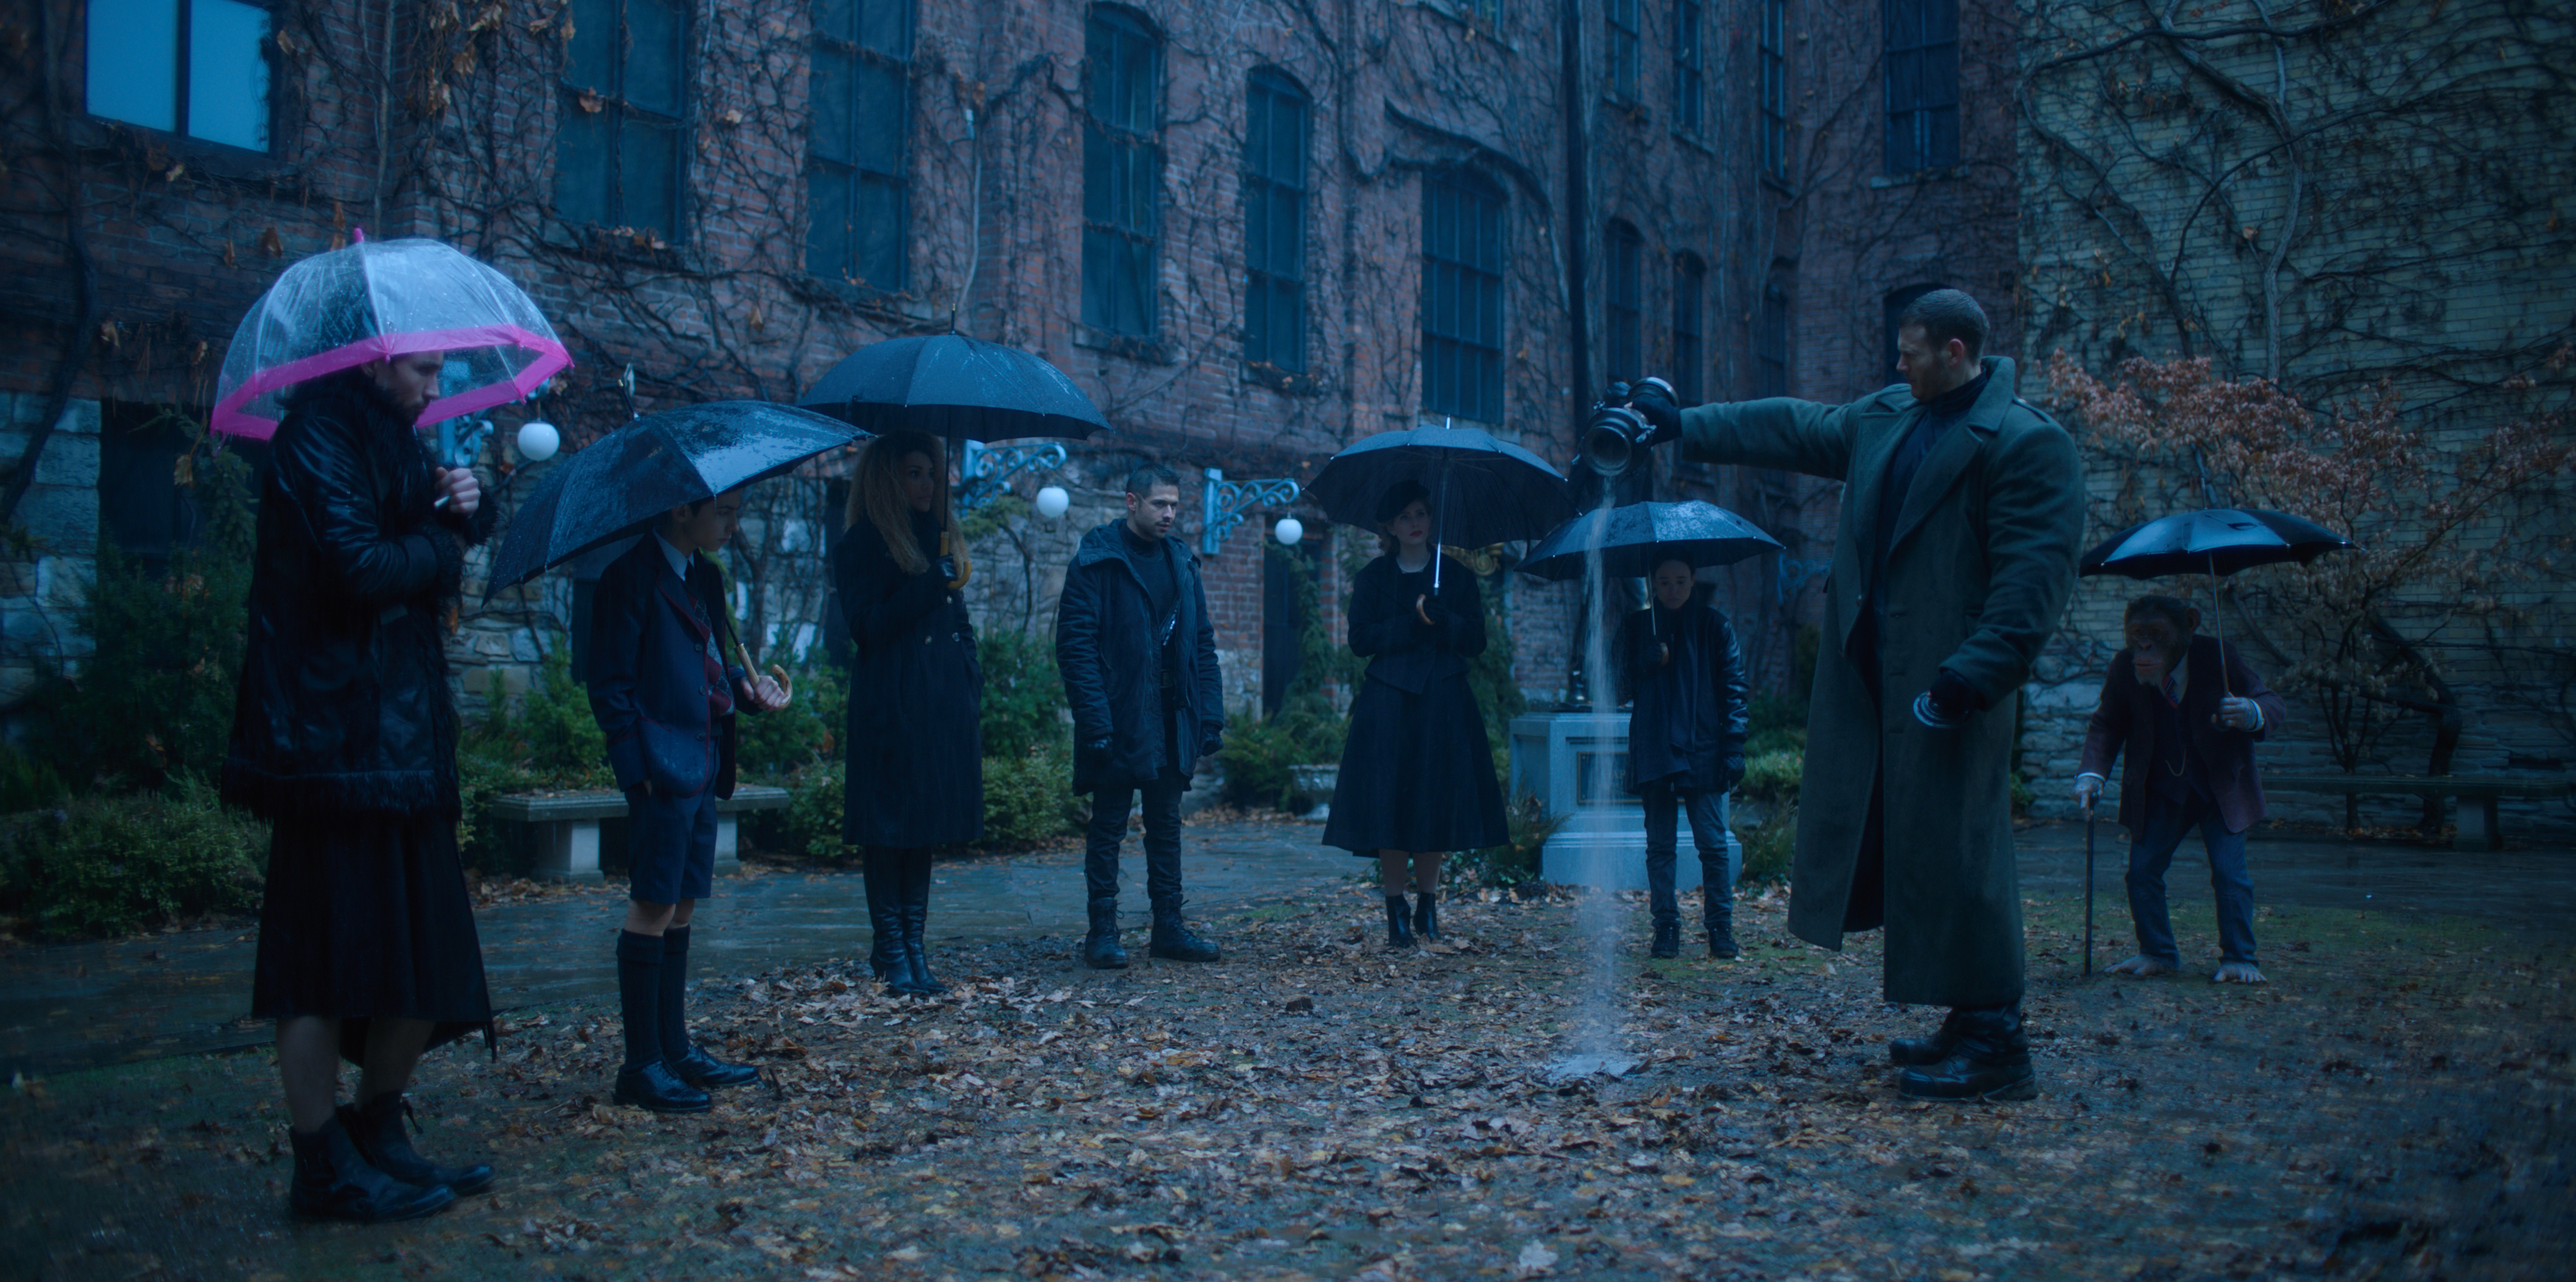 The Umbrella Academy Netflix